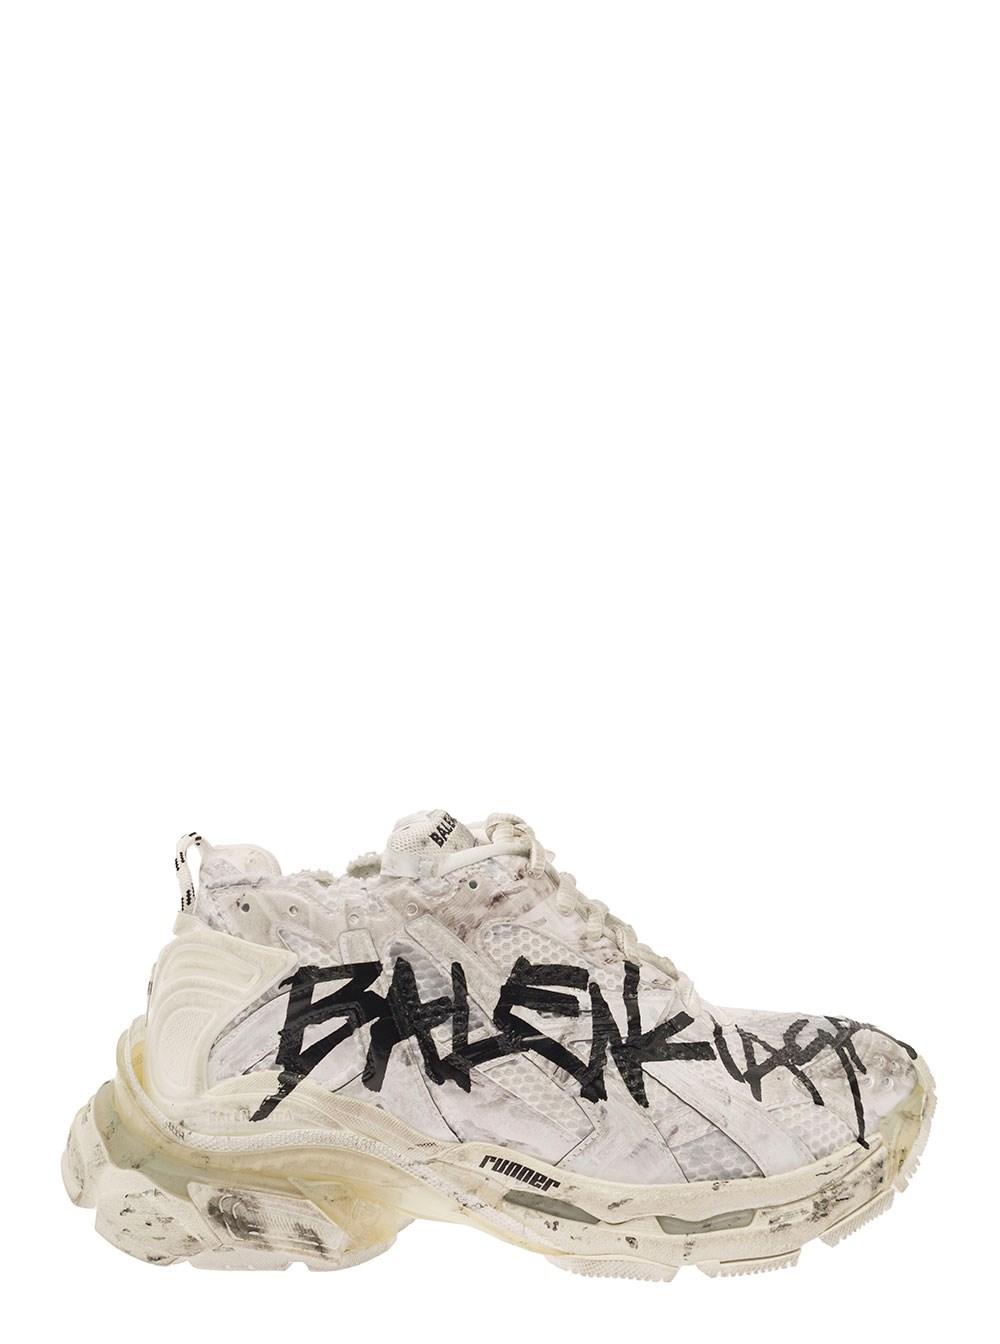 Balenciaga Runner Graffiti Sneaker In White/black for Men | Lyst